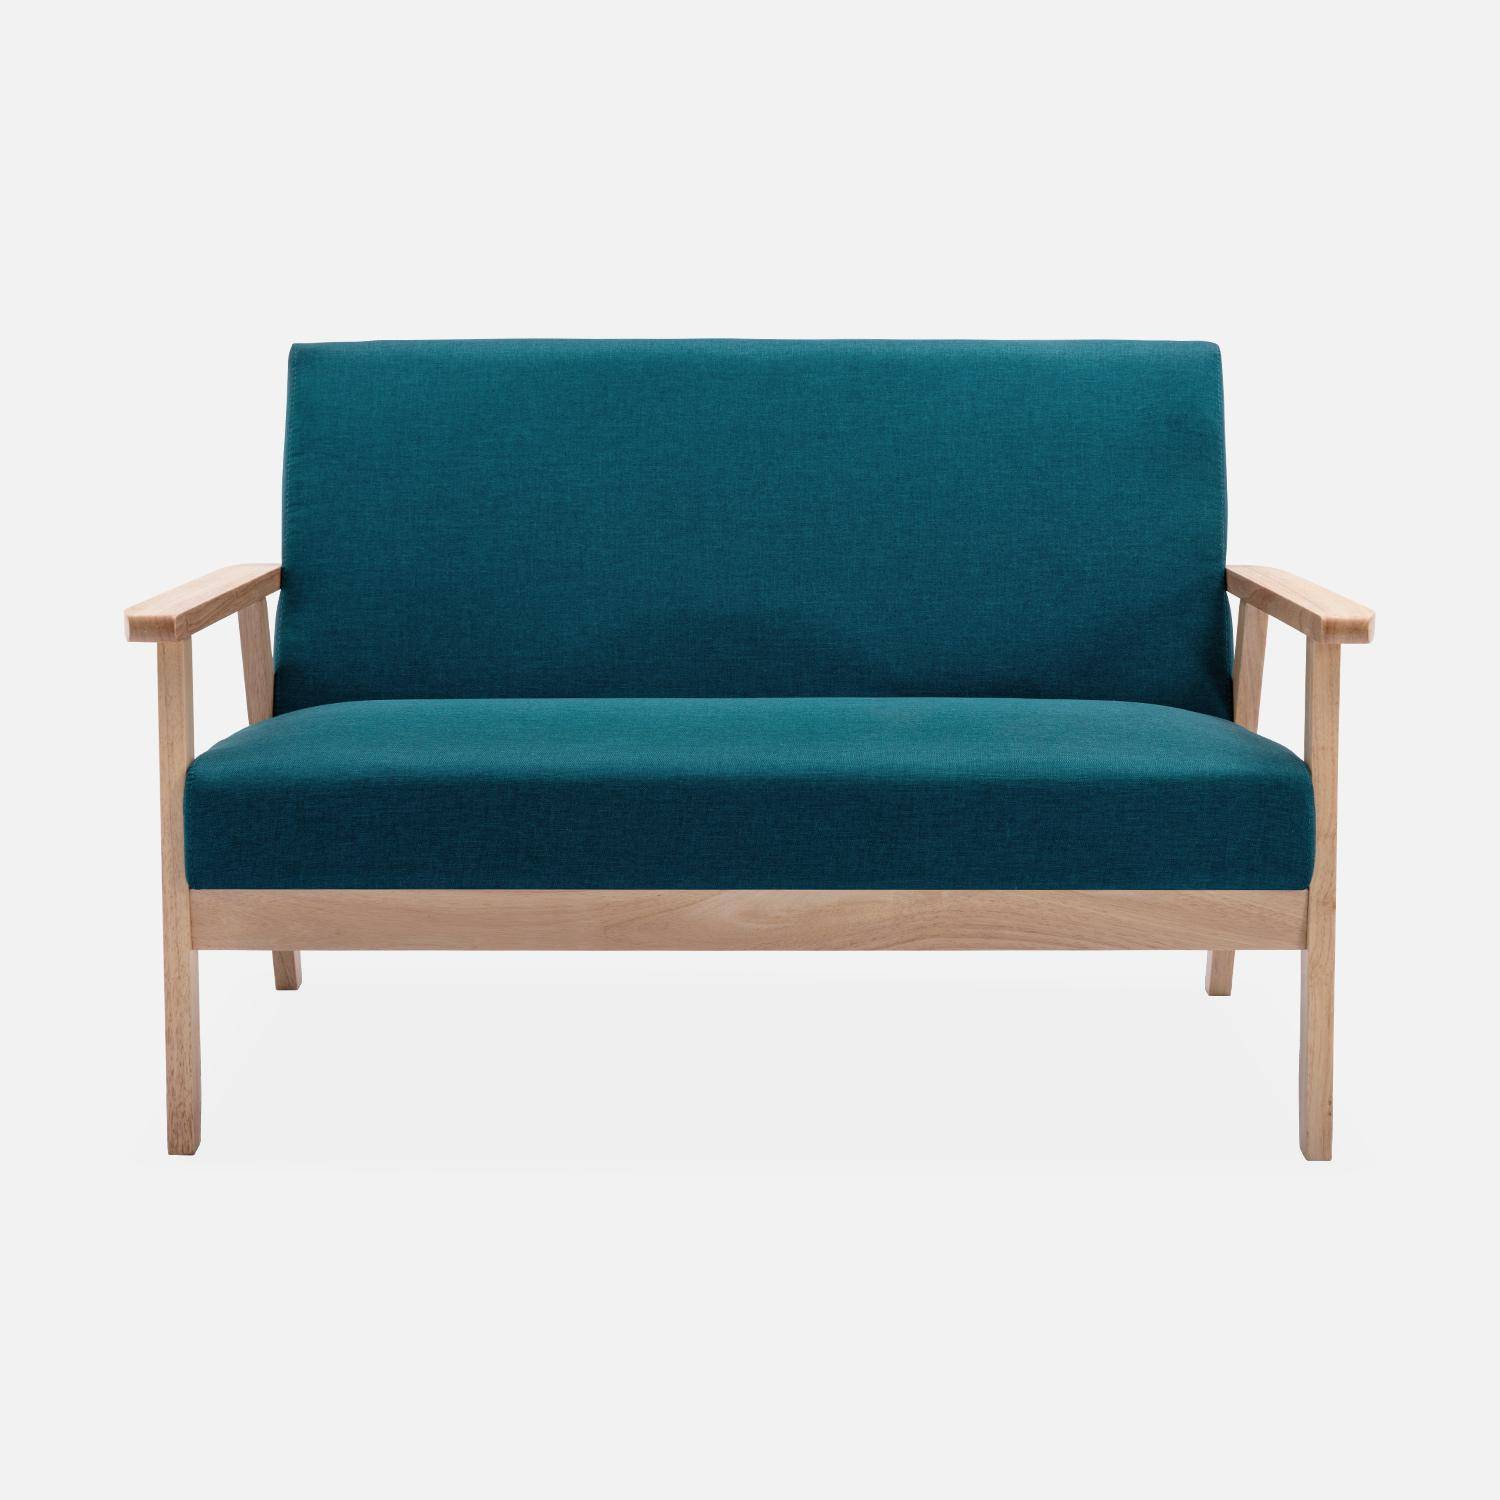 Banquette et fauteuil scandinave en bois et tissu bleu pétrole L 114 x l 69,5 x H 73cm,sweeek,Photo3